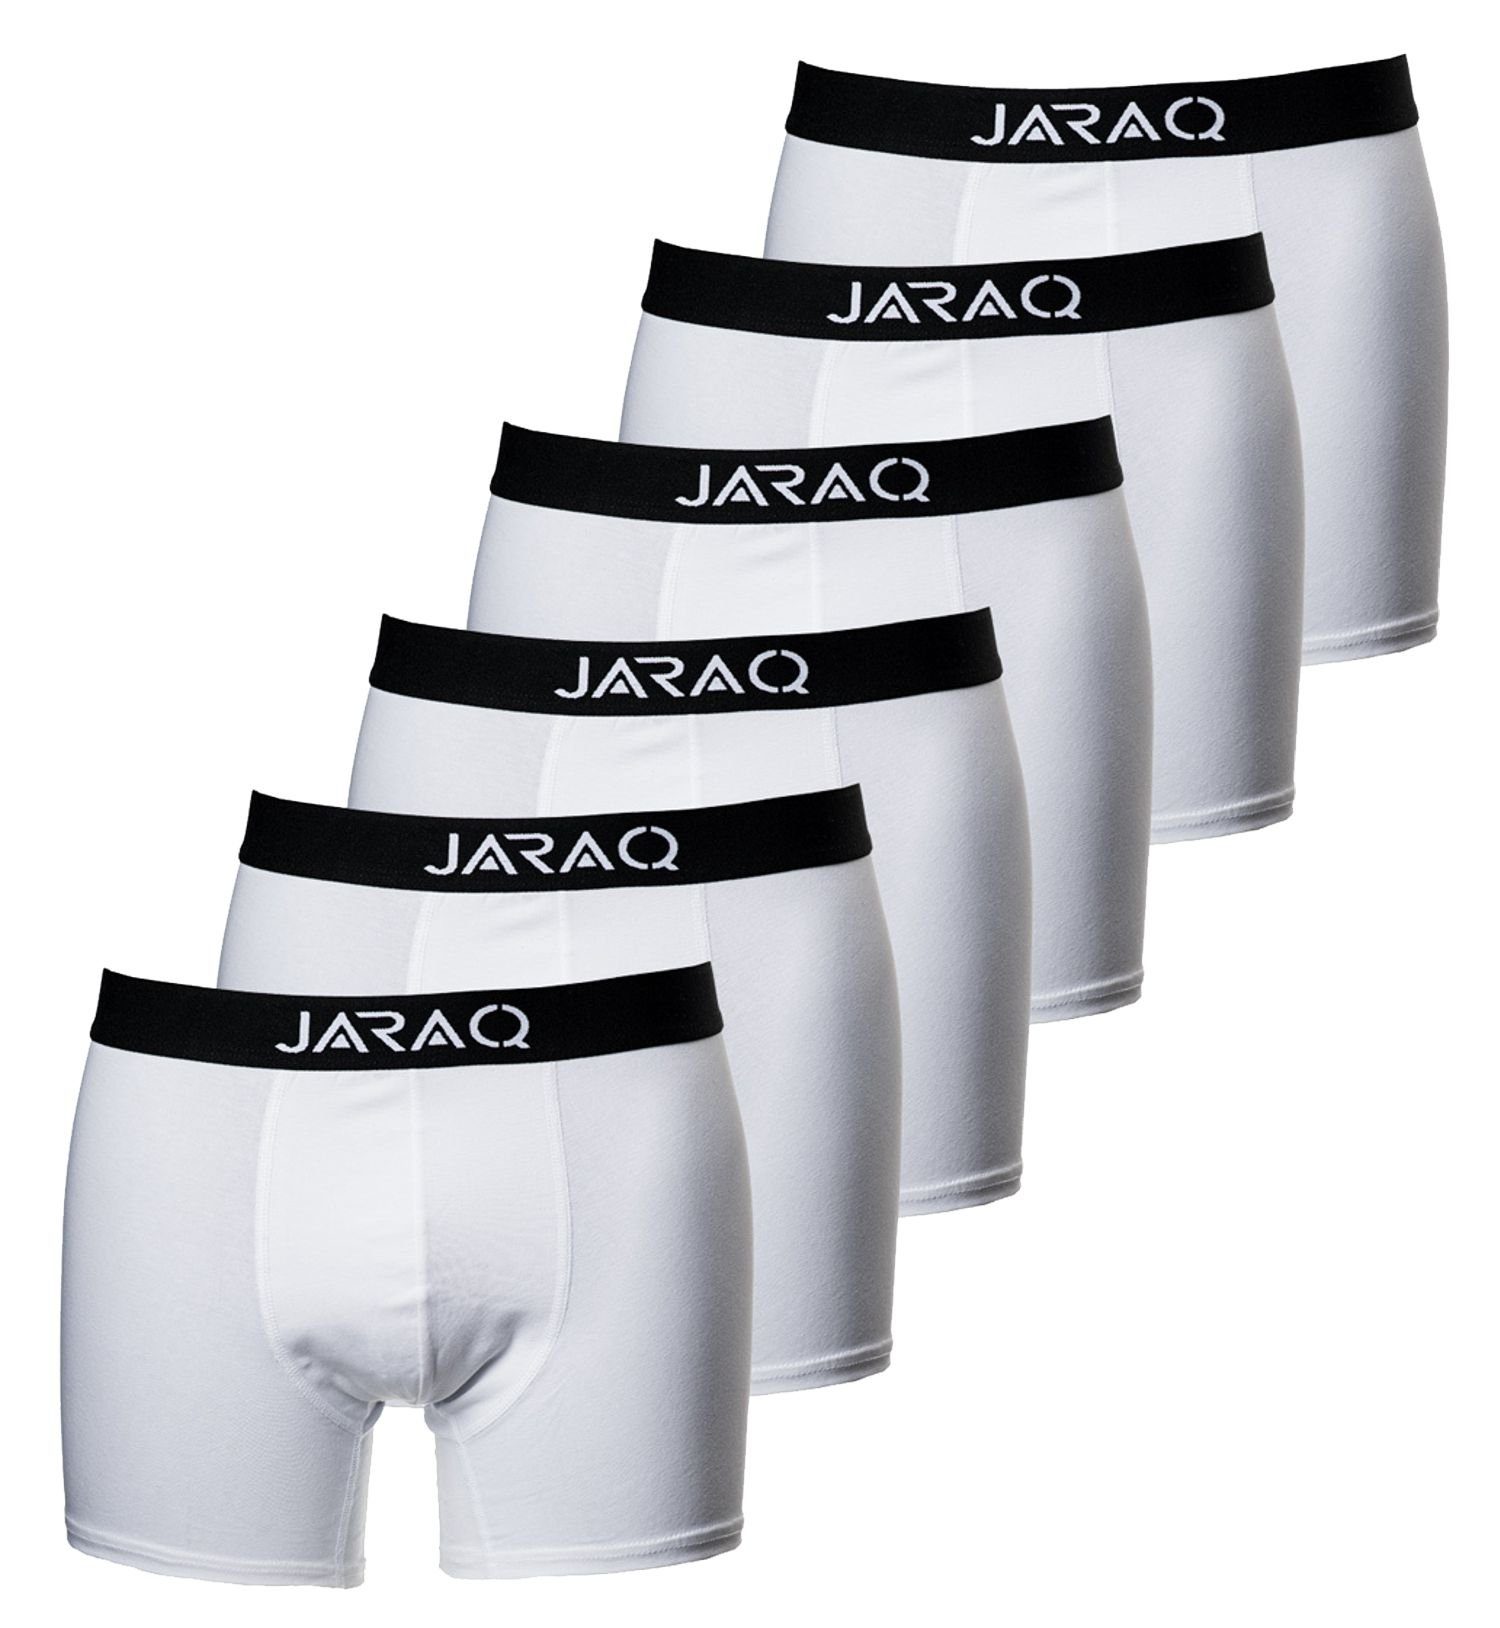 JARAQ Boxer JARAQ Bambus Boxershorts Herren 6er Pack Perfekte Passform  Unterhosen für Männer S - 4XL Weiß